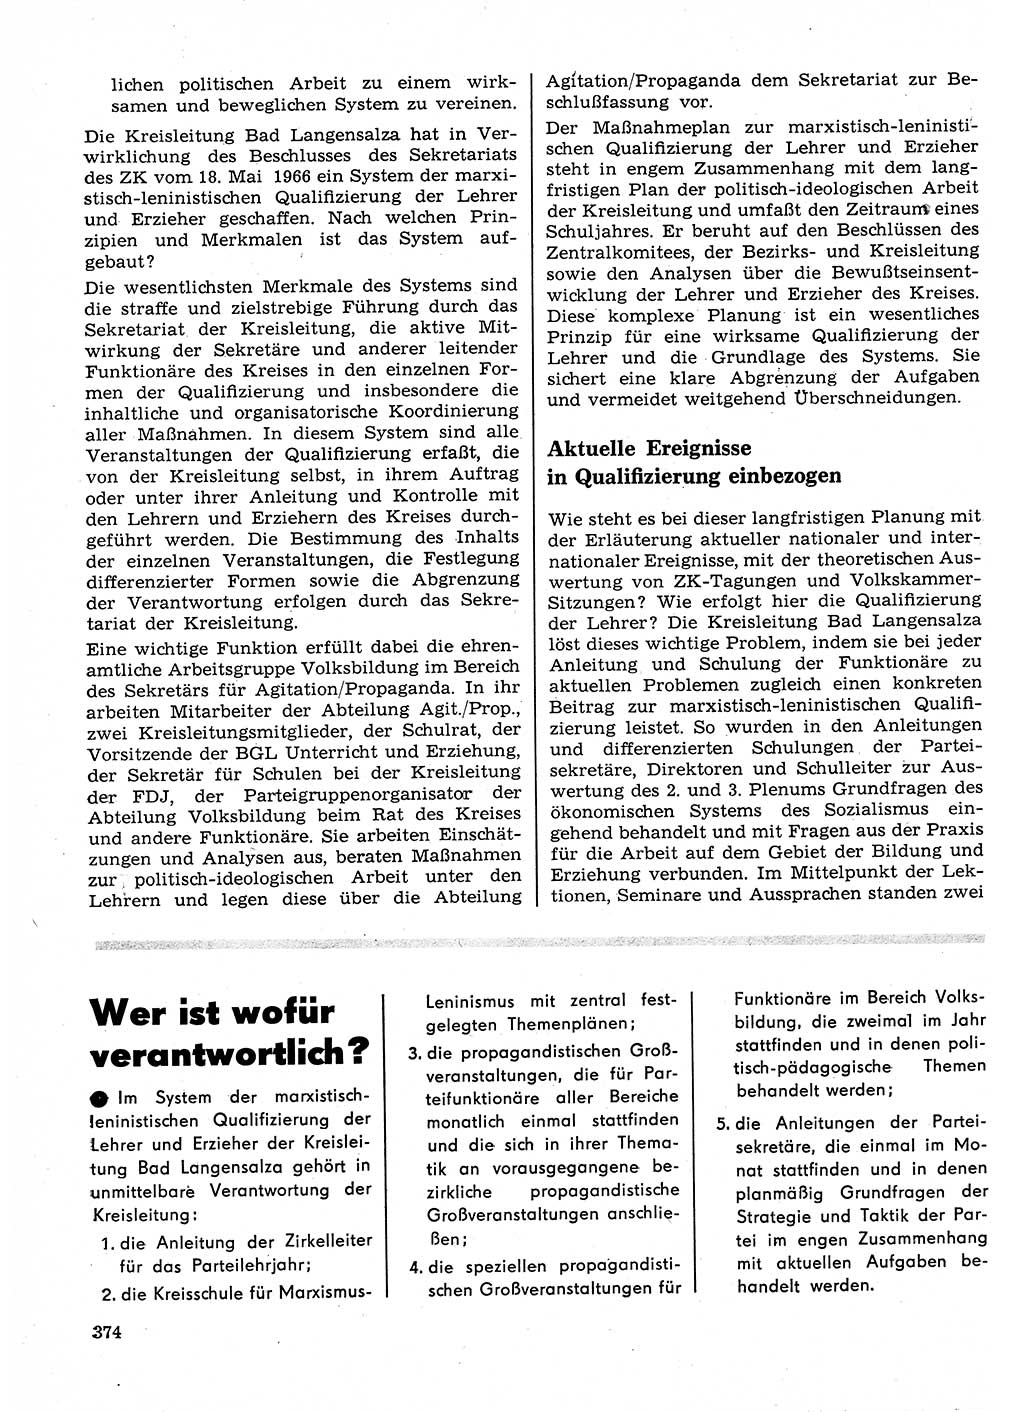 Neuer Weg (NW), Organ des Zentralkomitees (ZK) der SED (Sozialistische Einheitspartei Deutschlands) für Fragen des Parteilebens, 23. Jahrgang [Deutsche Demokratische Republik (DDR)] 1968, Seite 374 (NW ZK SED DDR 1968, S. 374)